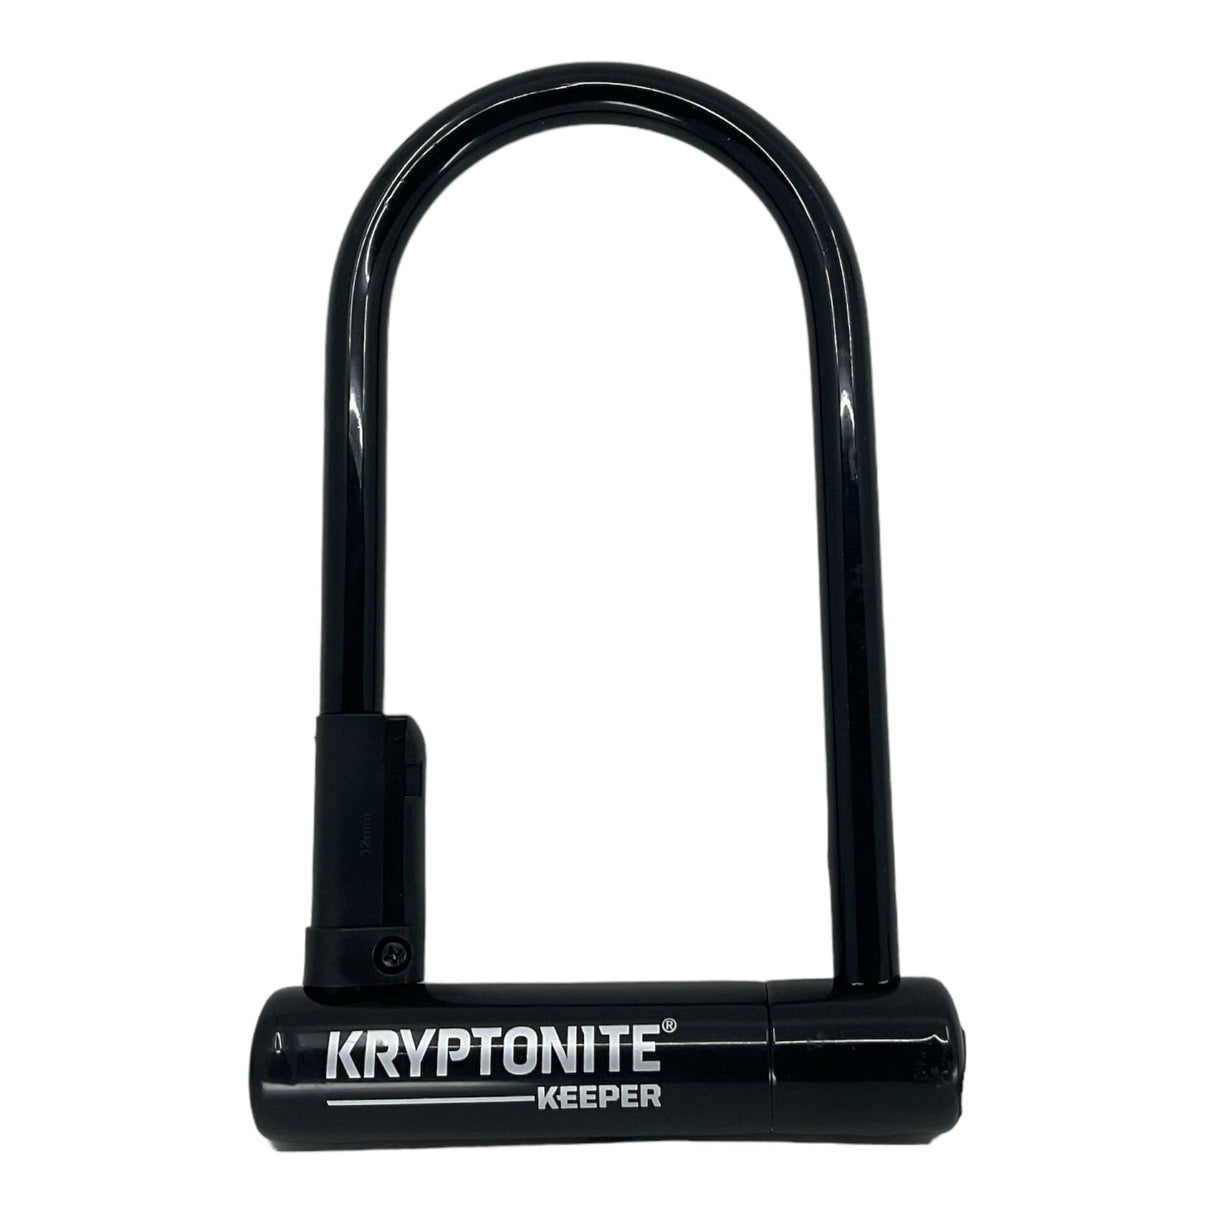 Kryptonite Keeper 12 Standard U-Lock with 4 foot Kryptoflex cable Sold Secure Silver